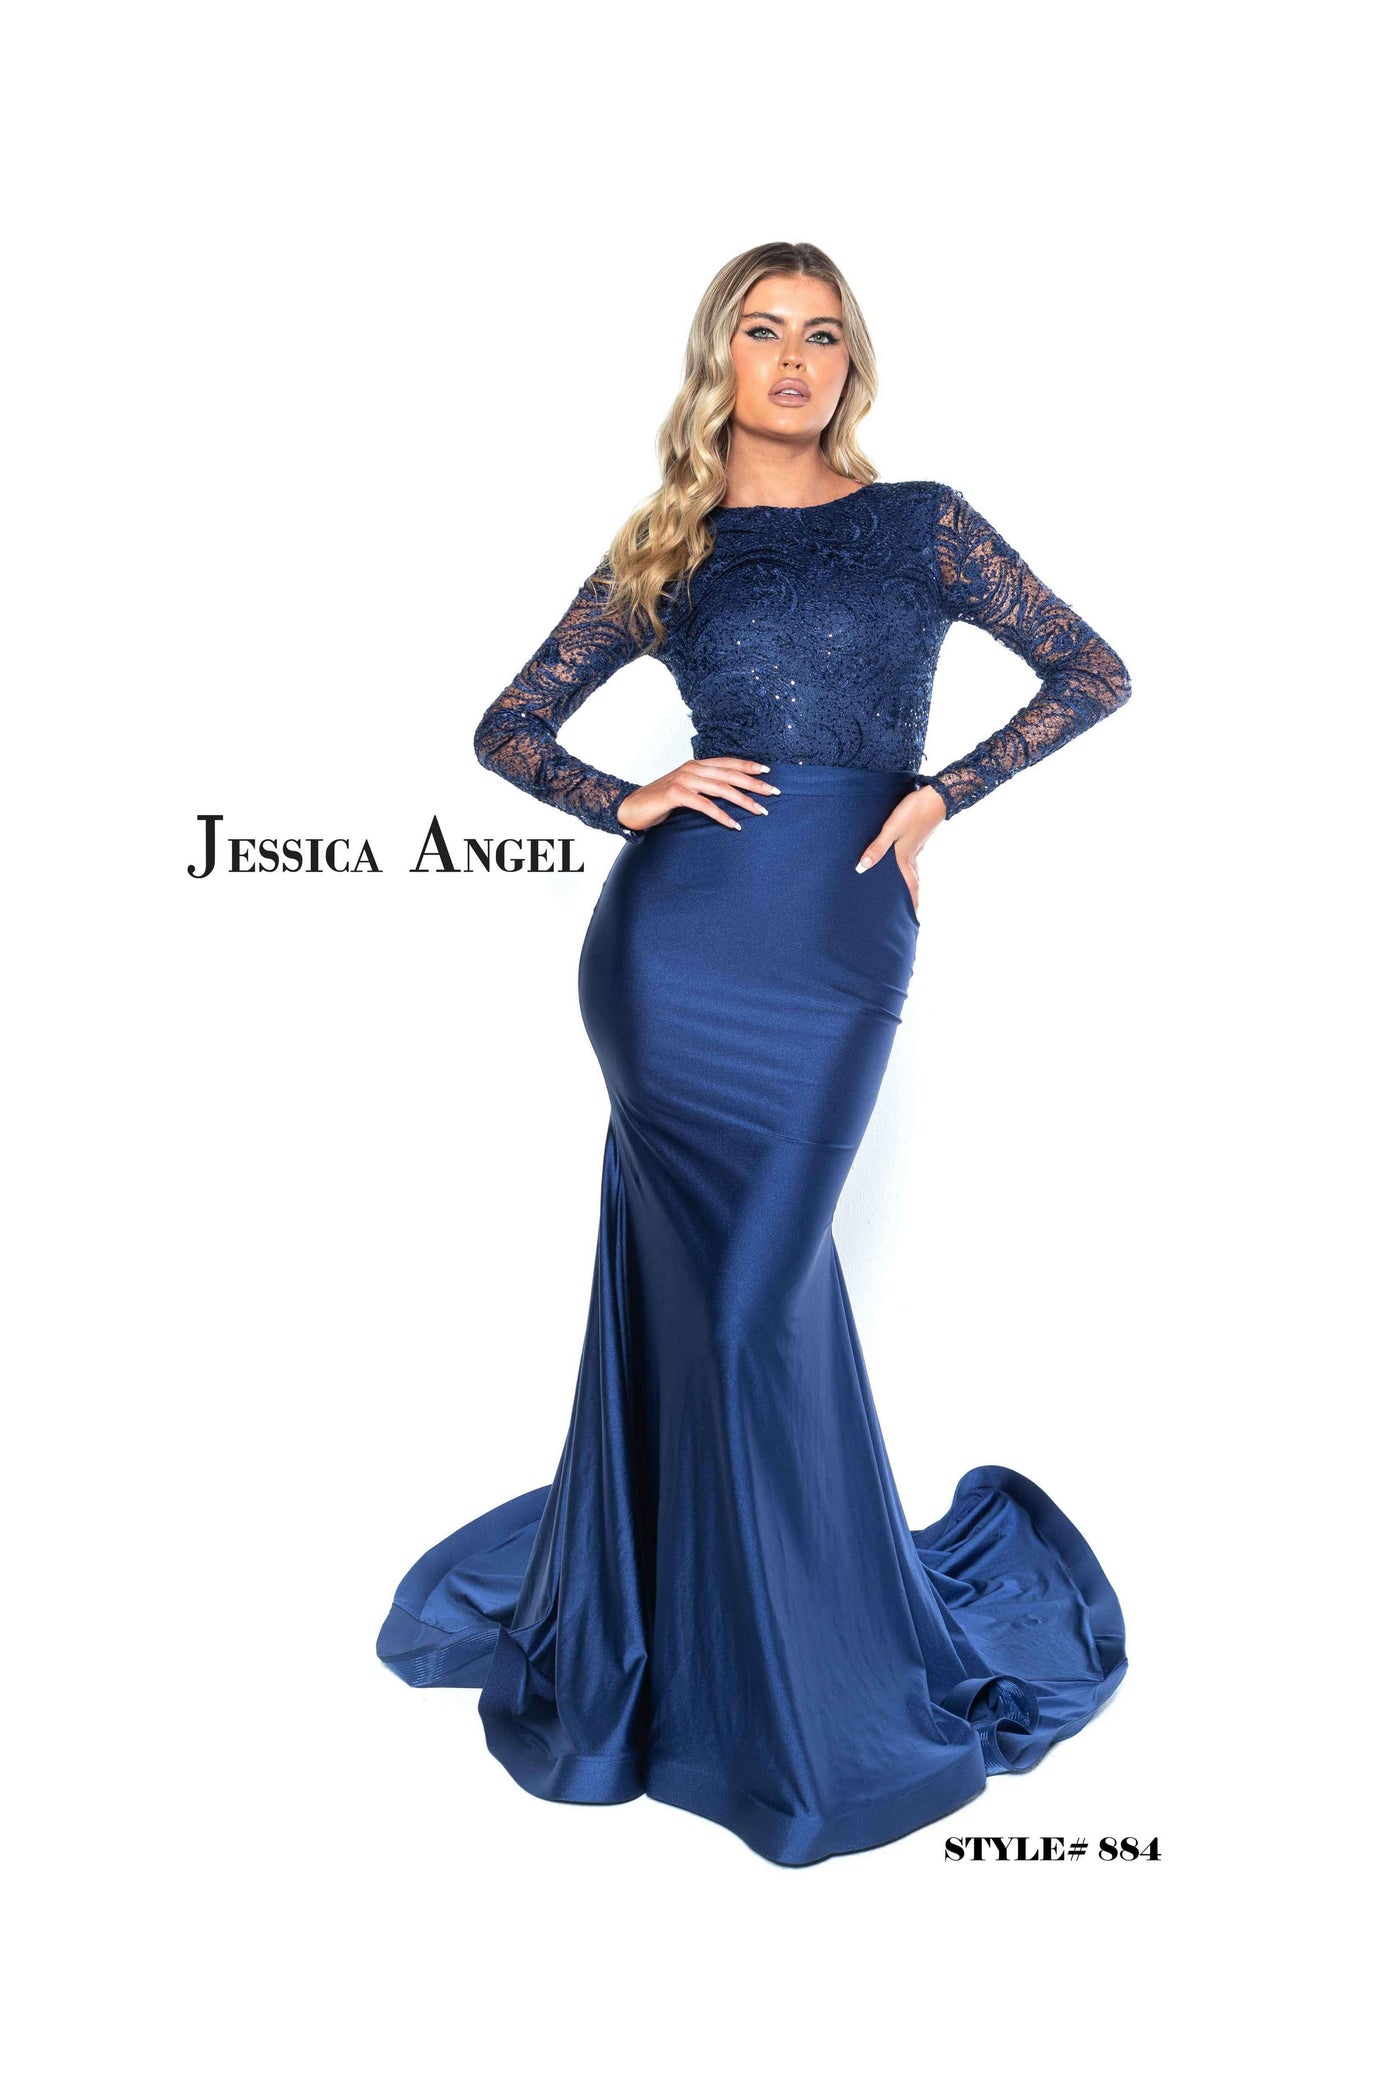 Jessica Angel 884